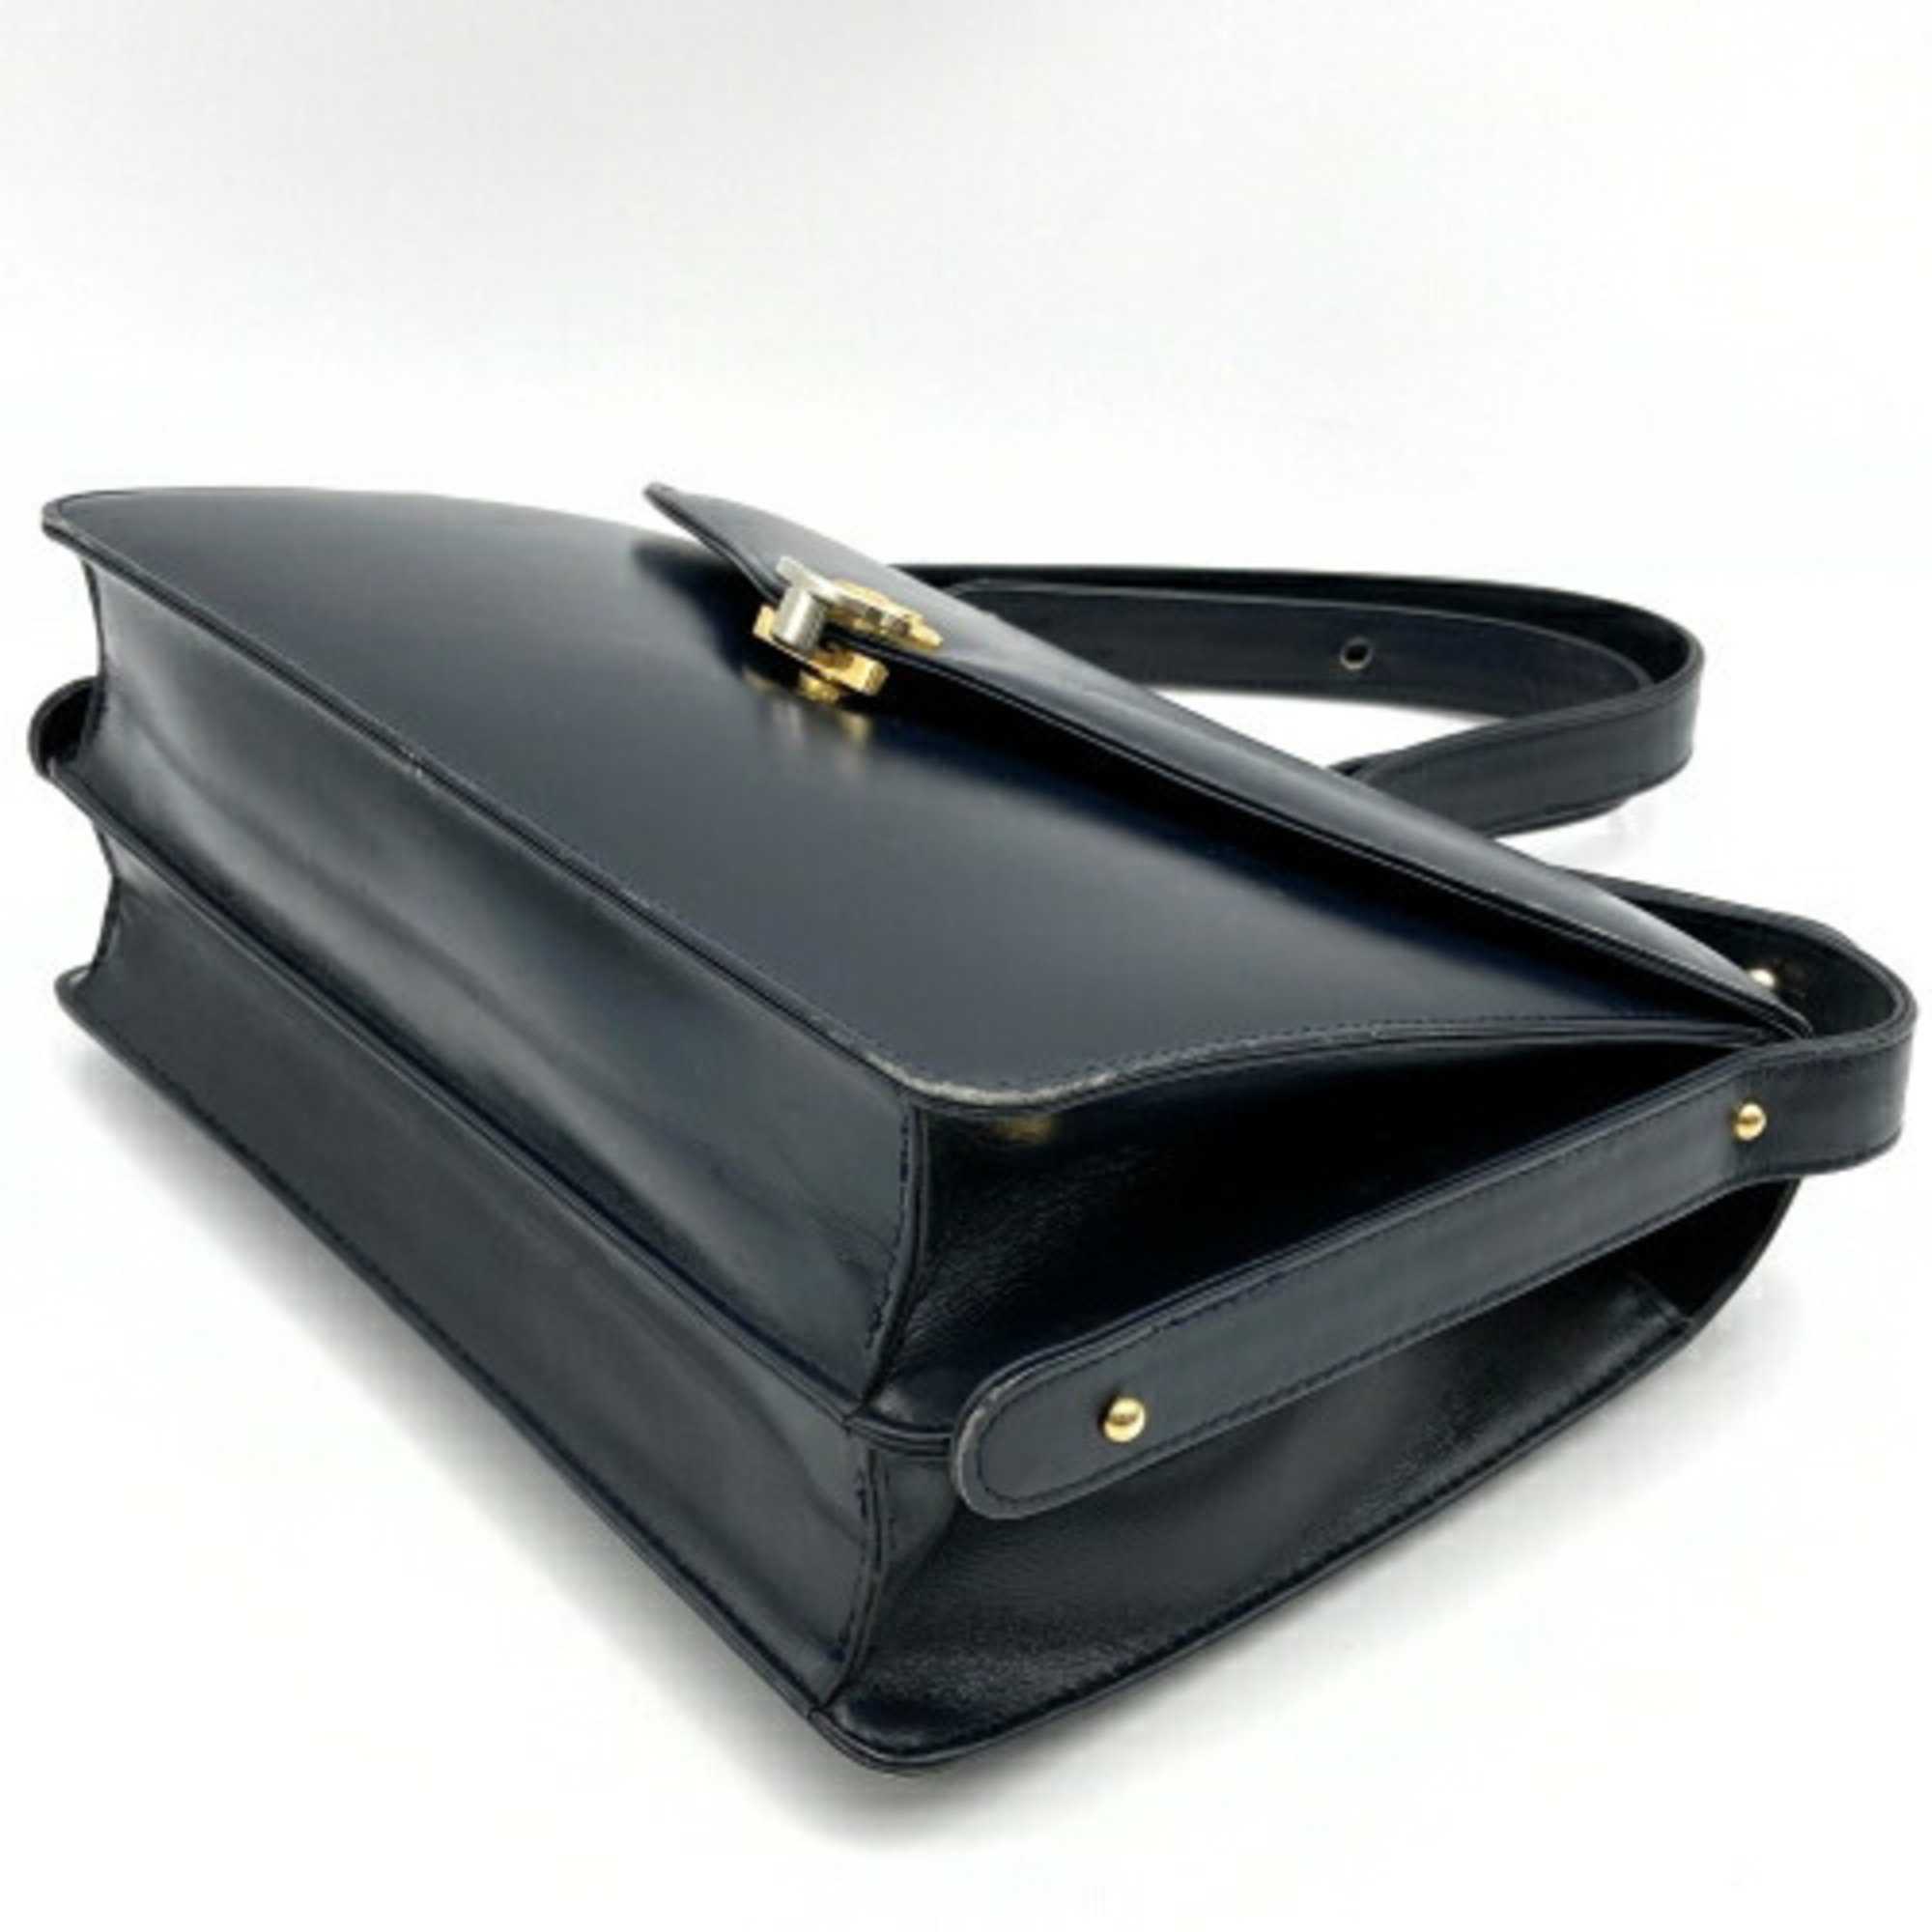 Celine shoulder bag handbag carriage hardware black leather ladies CELINE ITV2QN1O2QJW